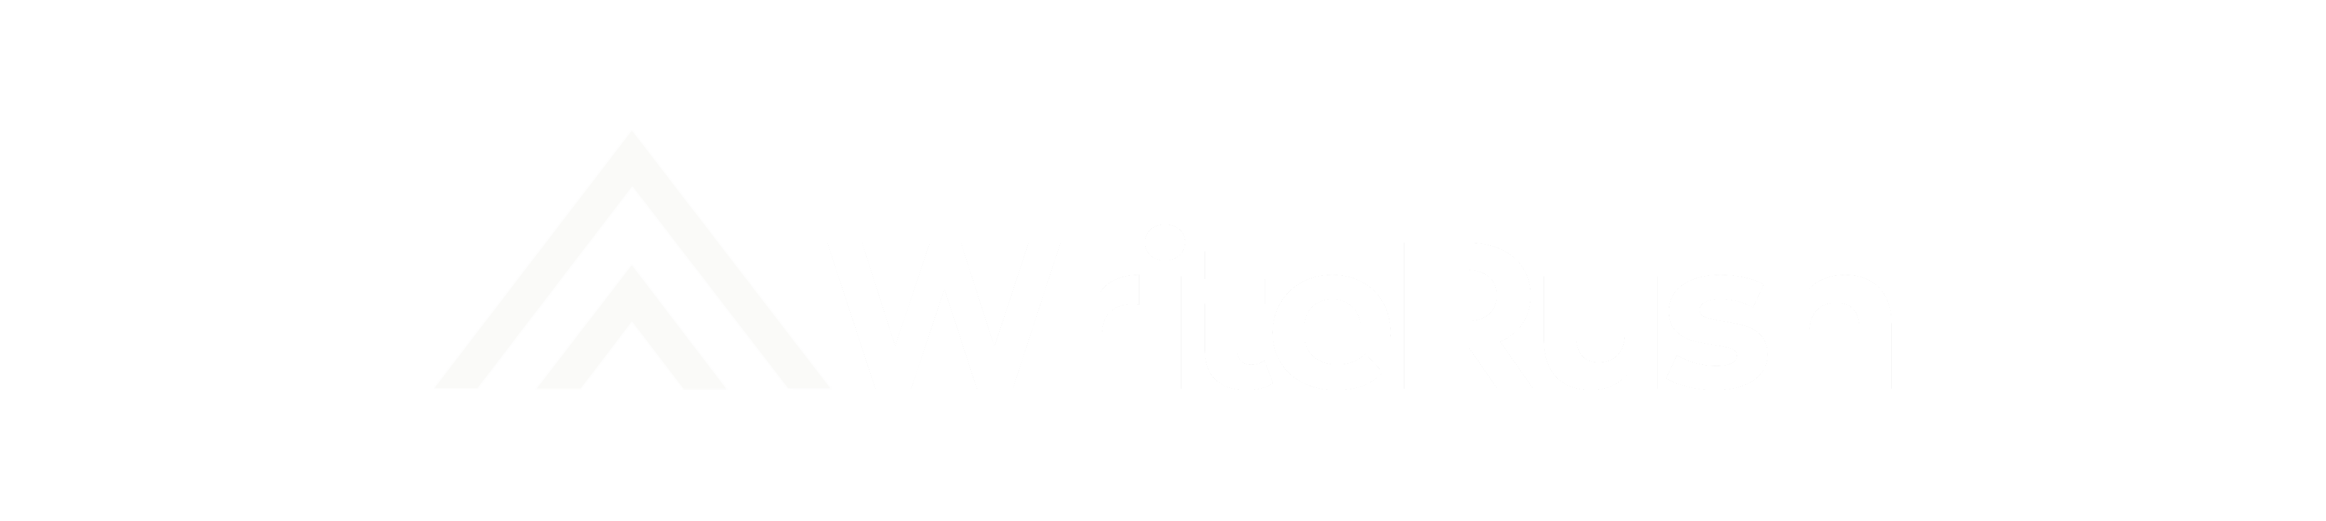 WriteRush